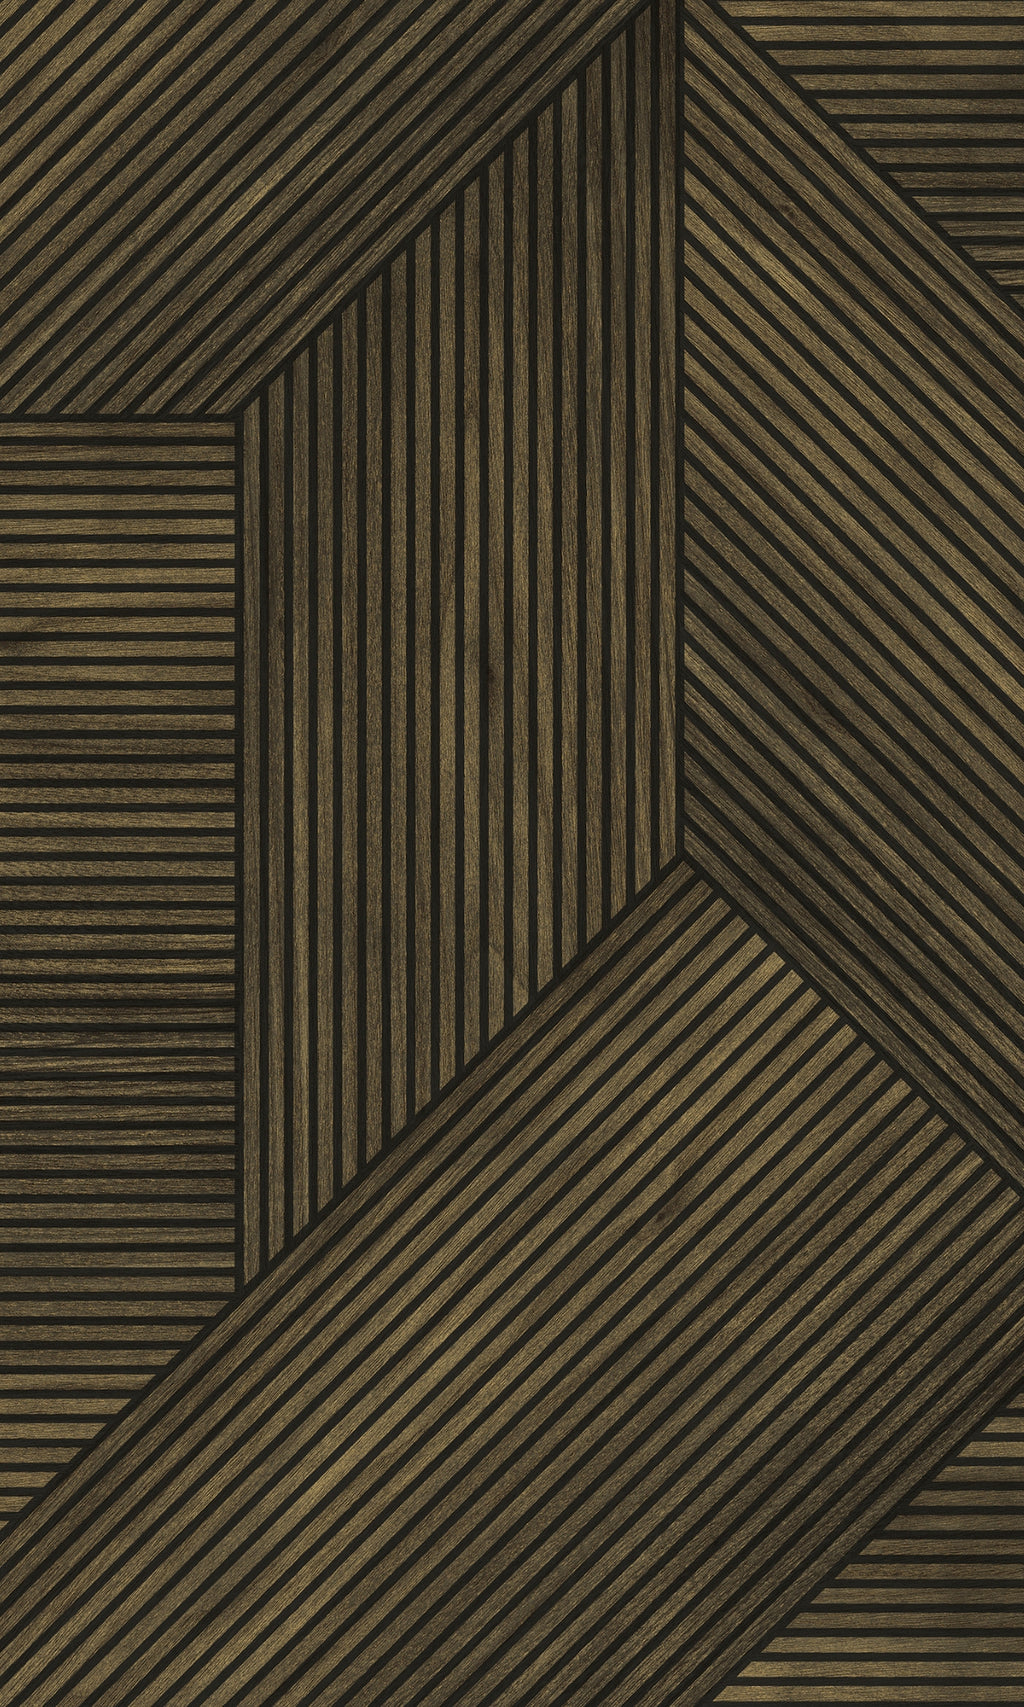 Walnut Geometric Wood Panel Wallpaper R8194